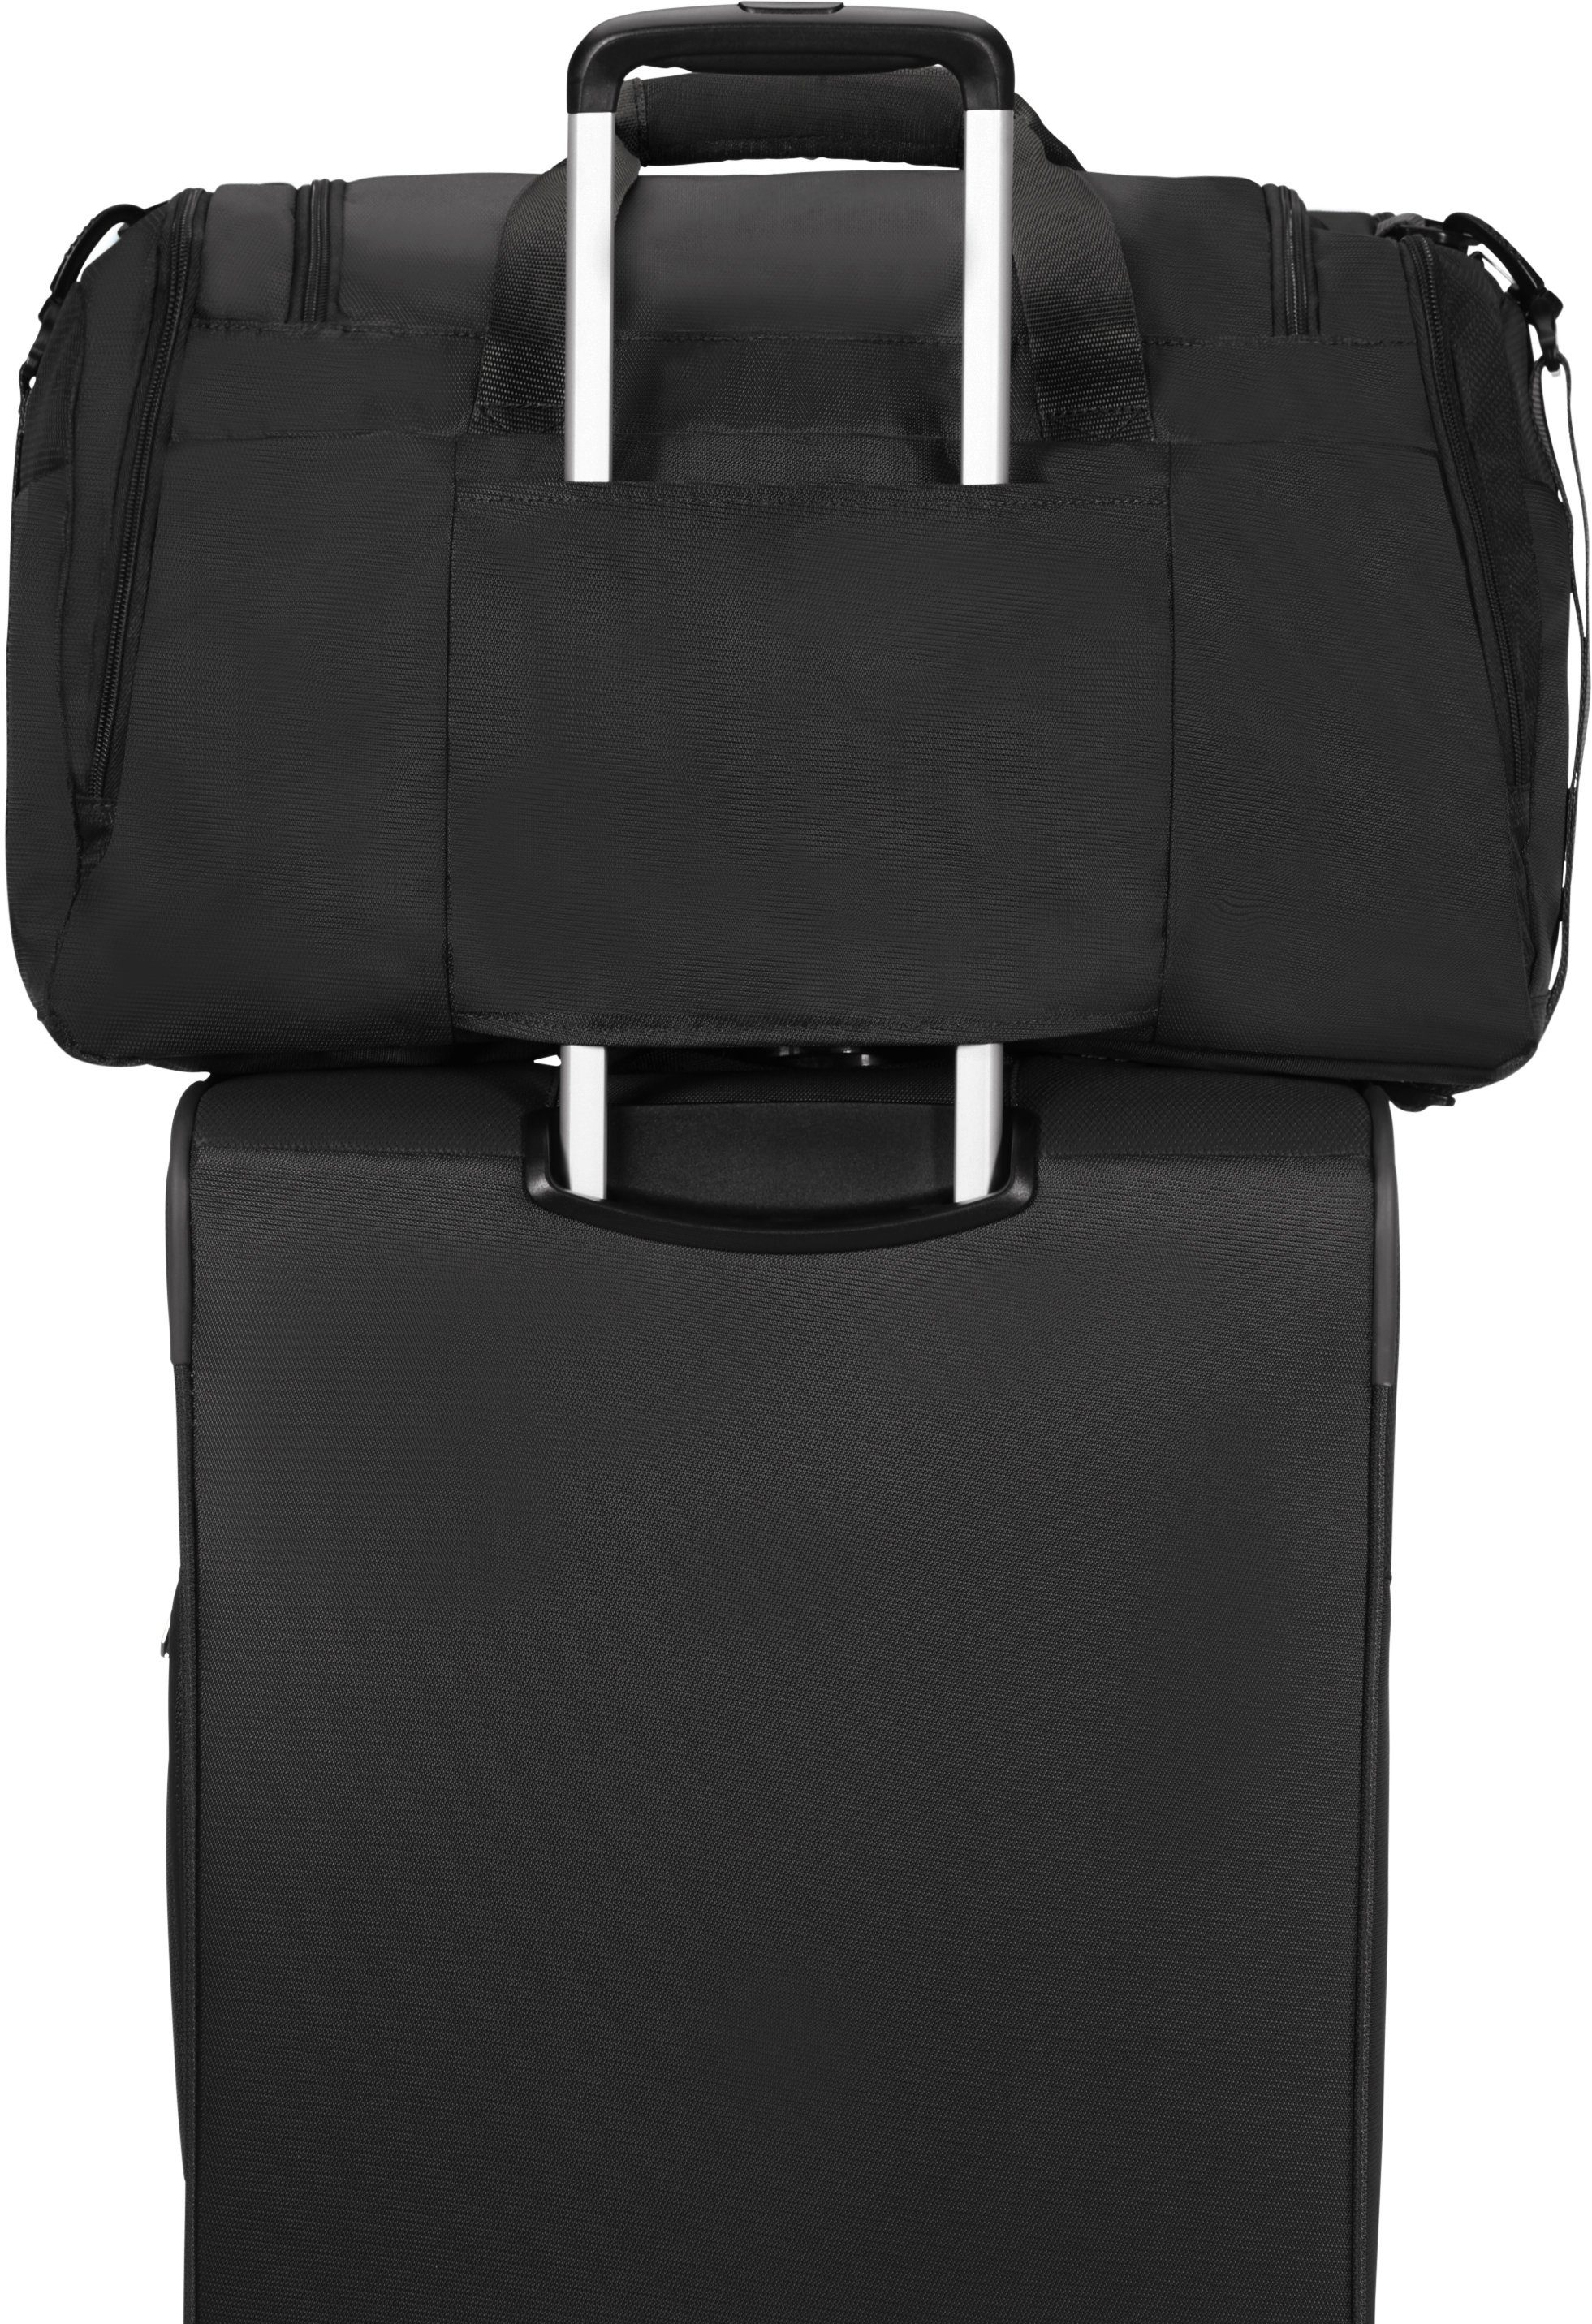 American Tourister® mit Trolley-Aufsteck-System Reisetasche schwarz Summerfunk